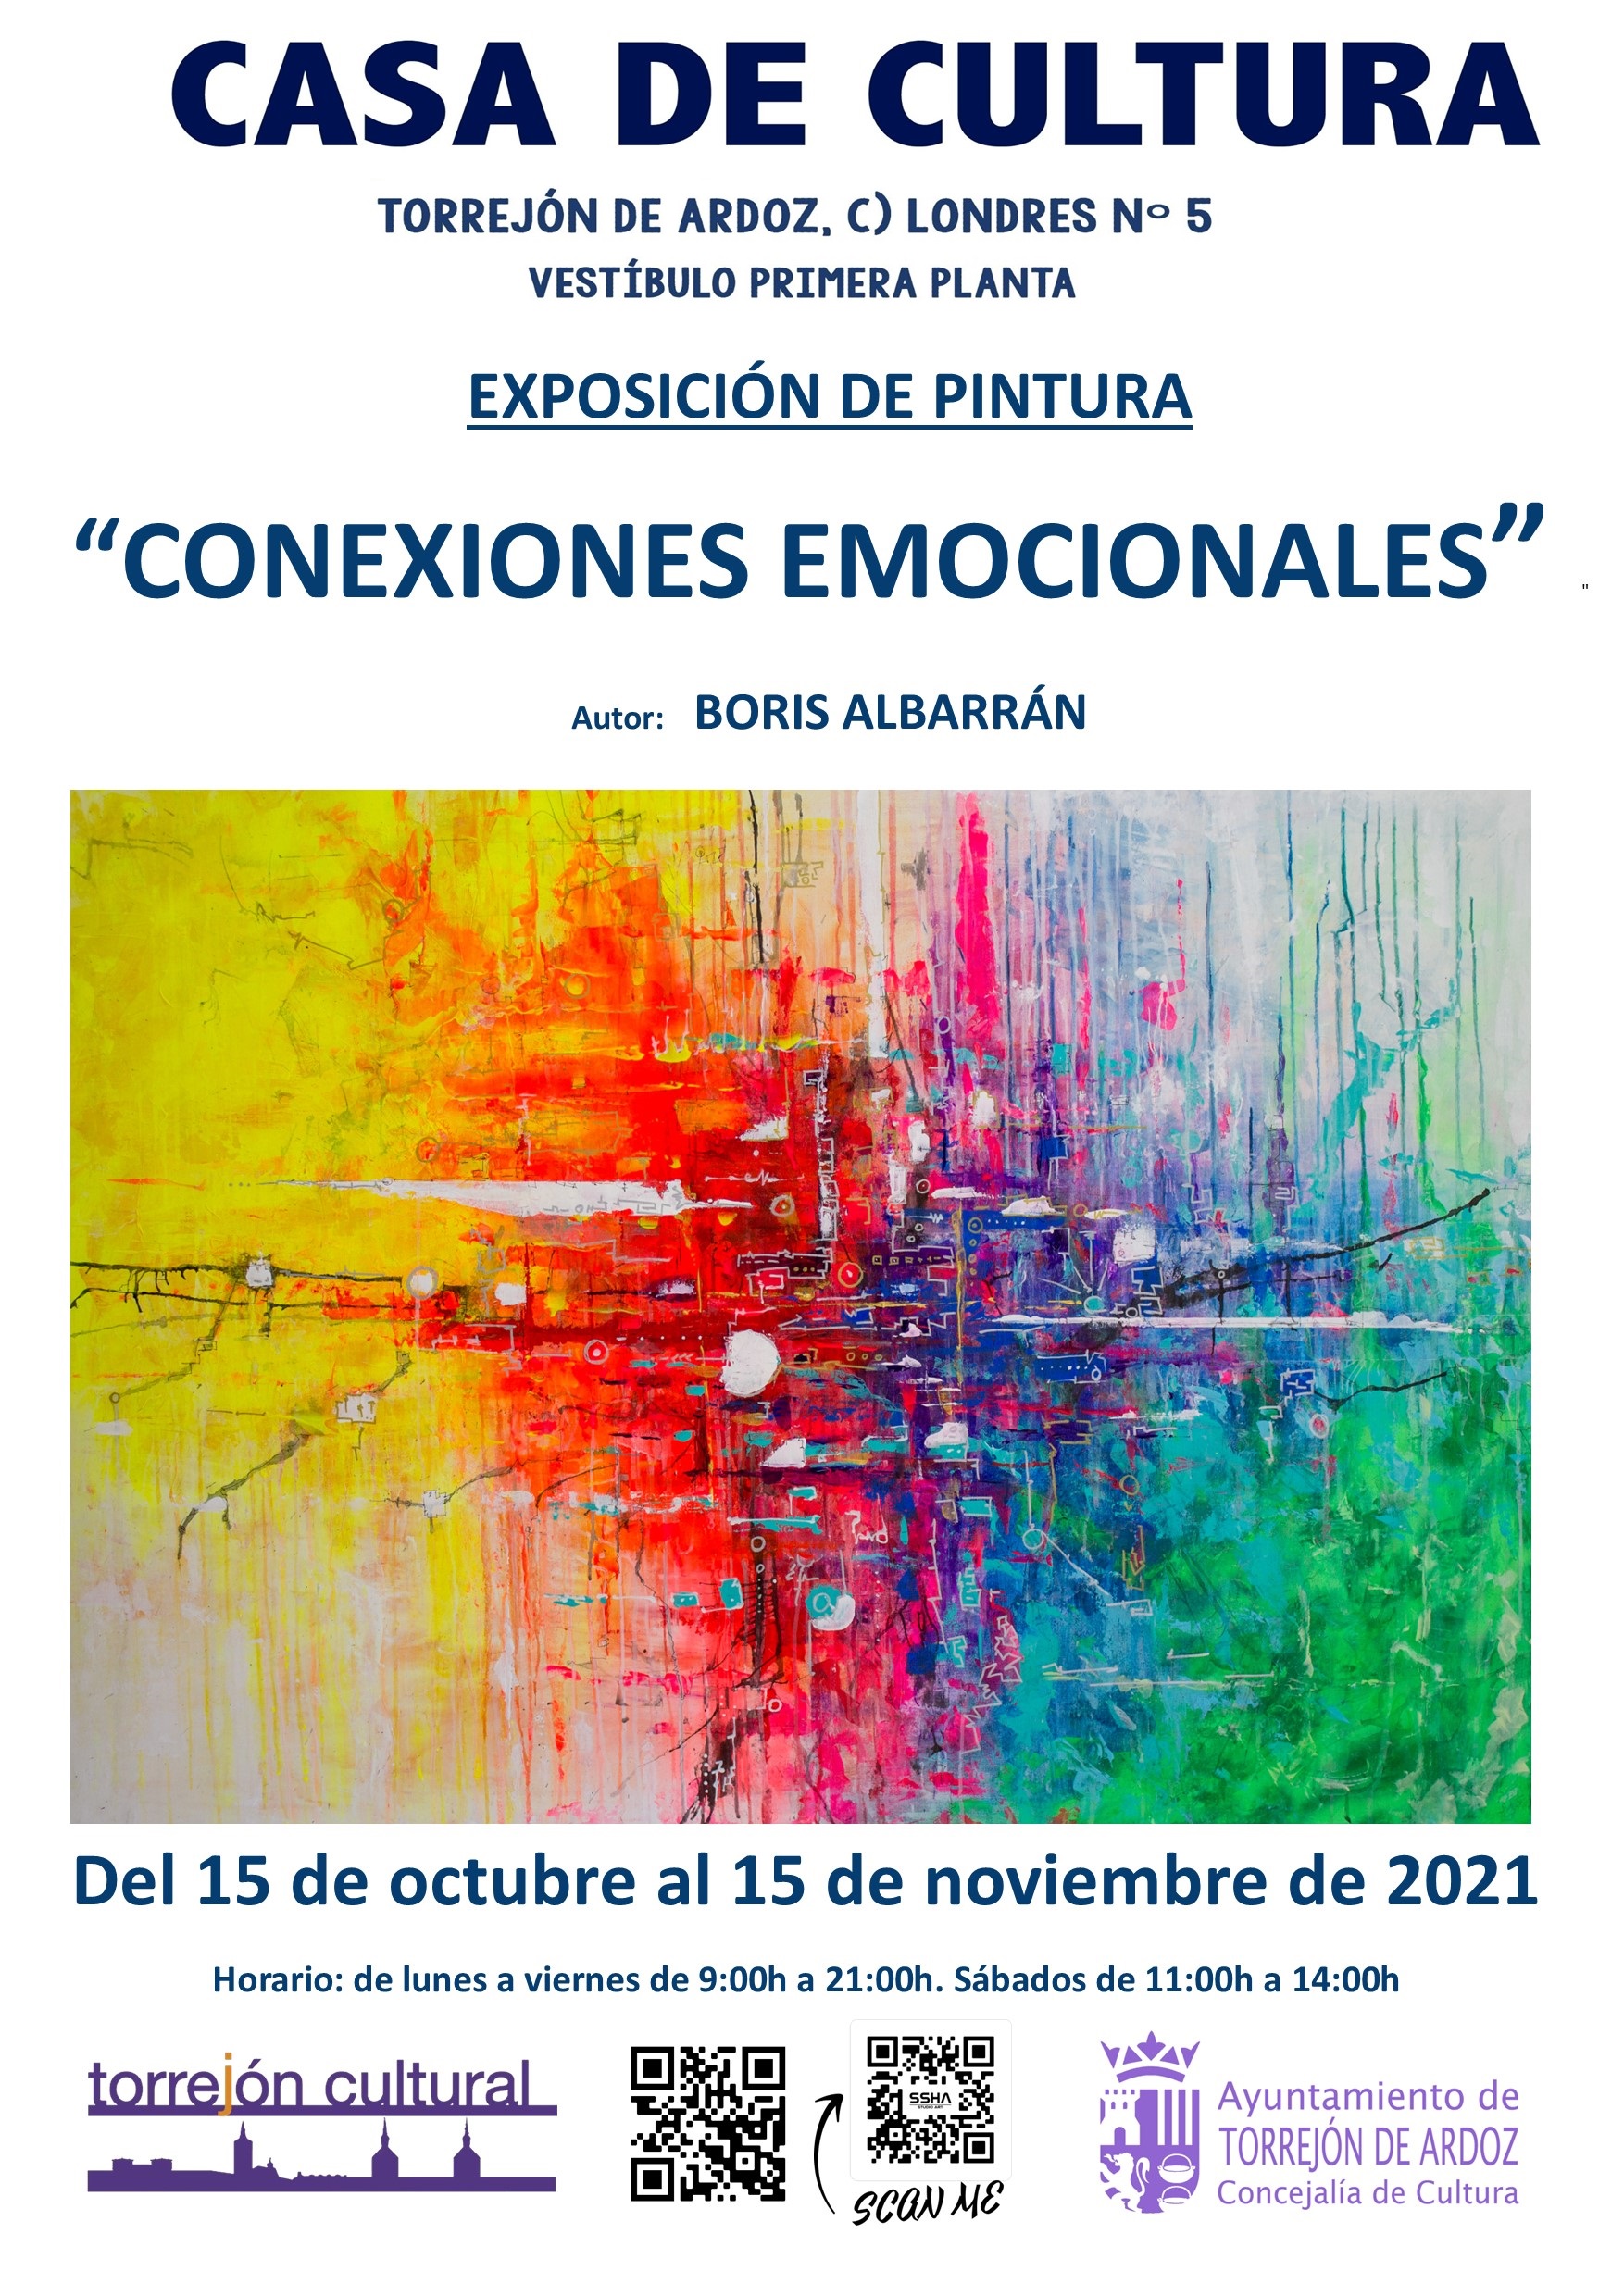 Exposición de pintura "Conexiones emocionales"